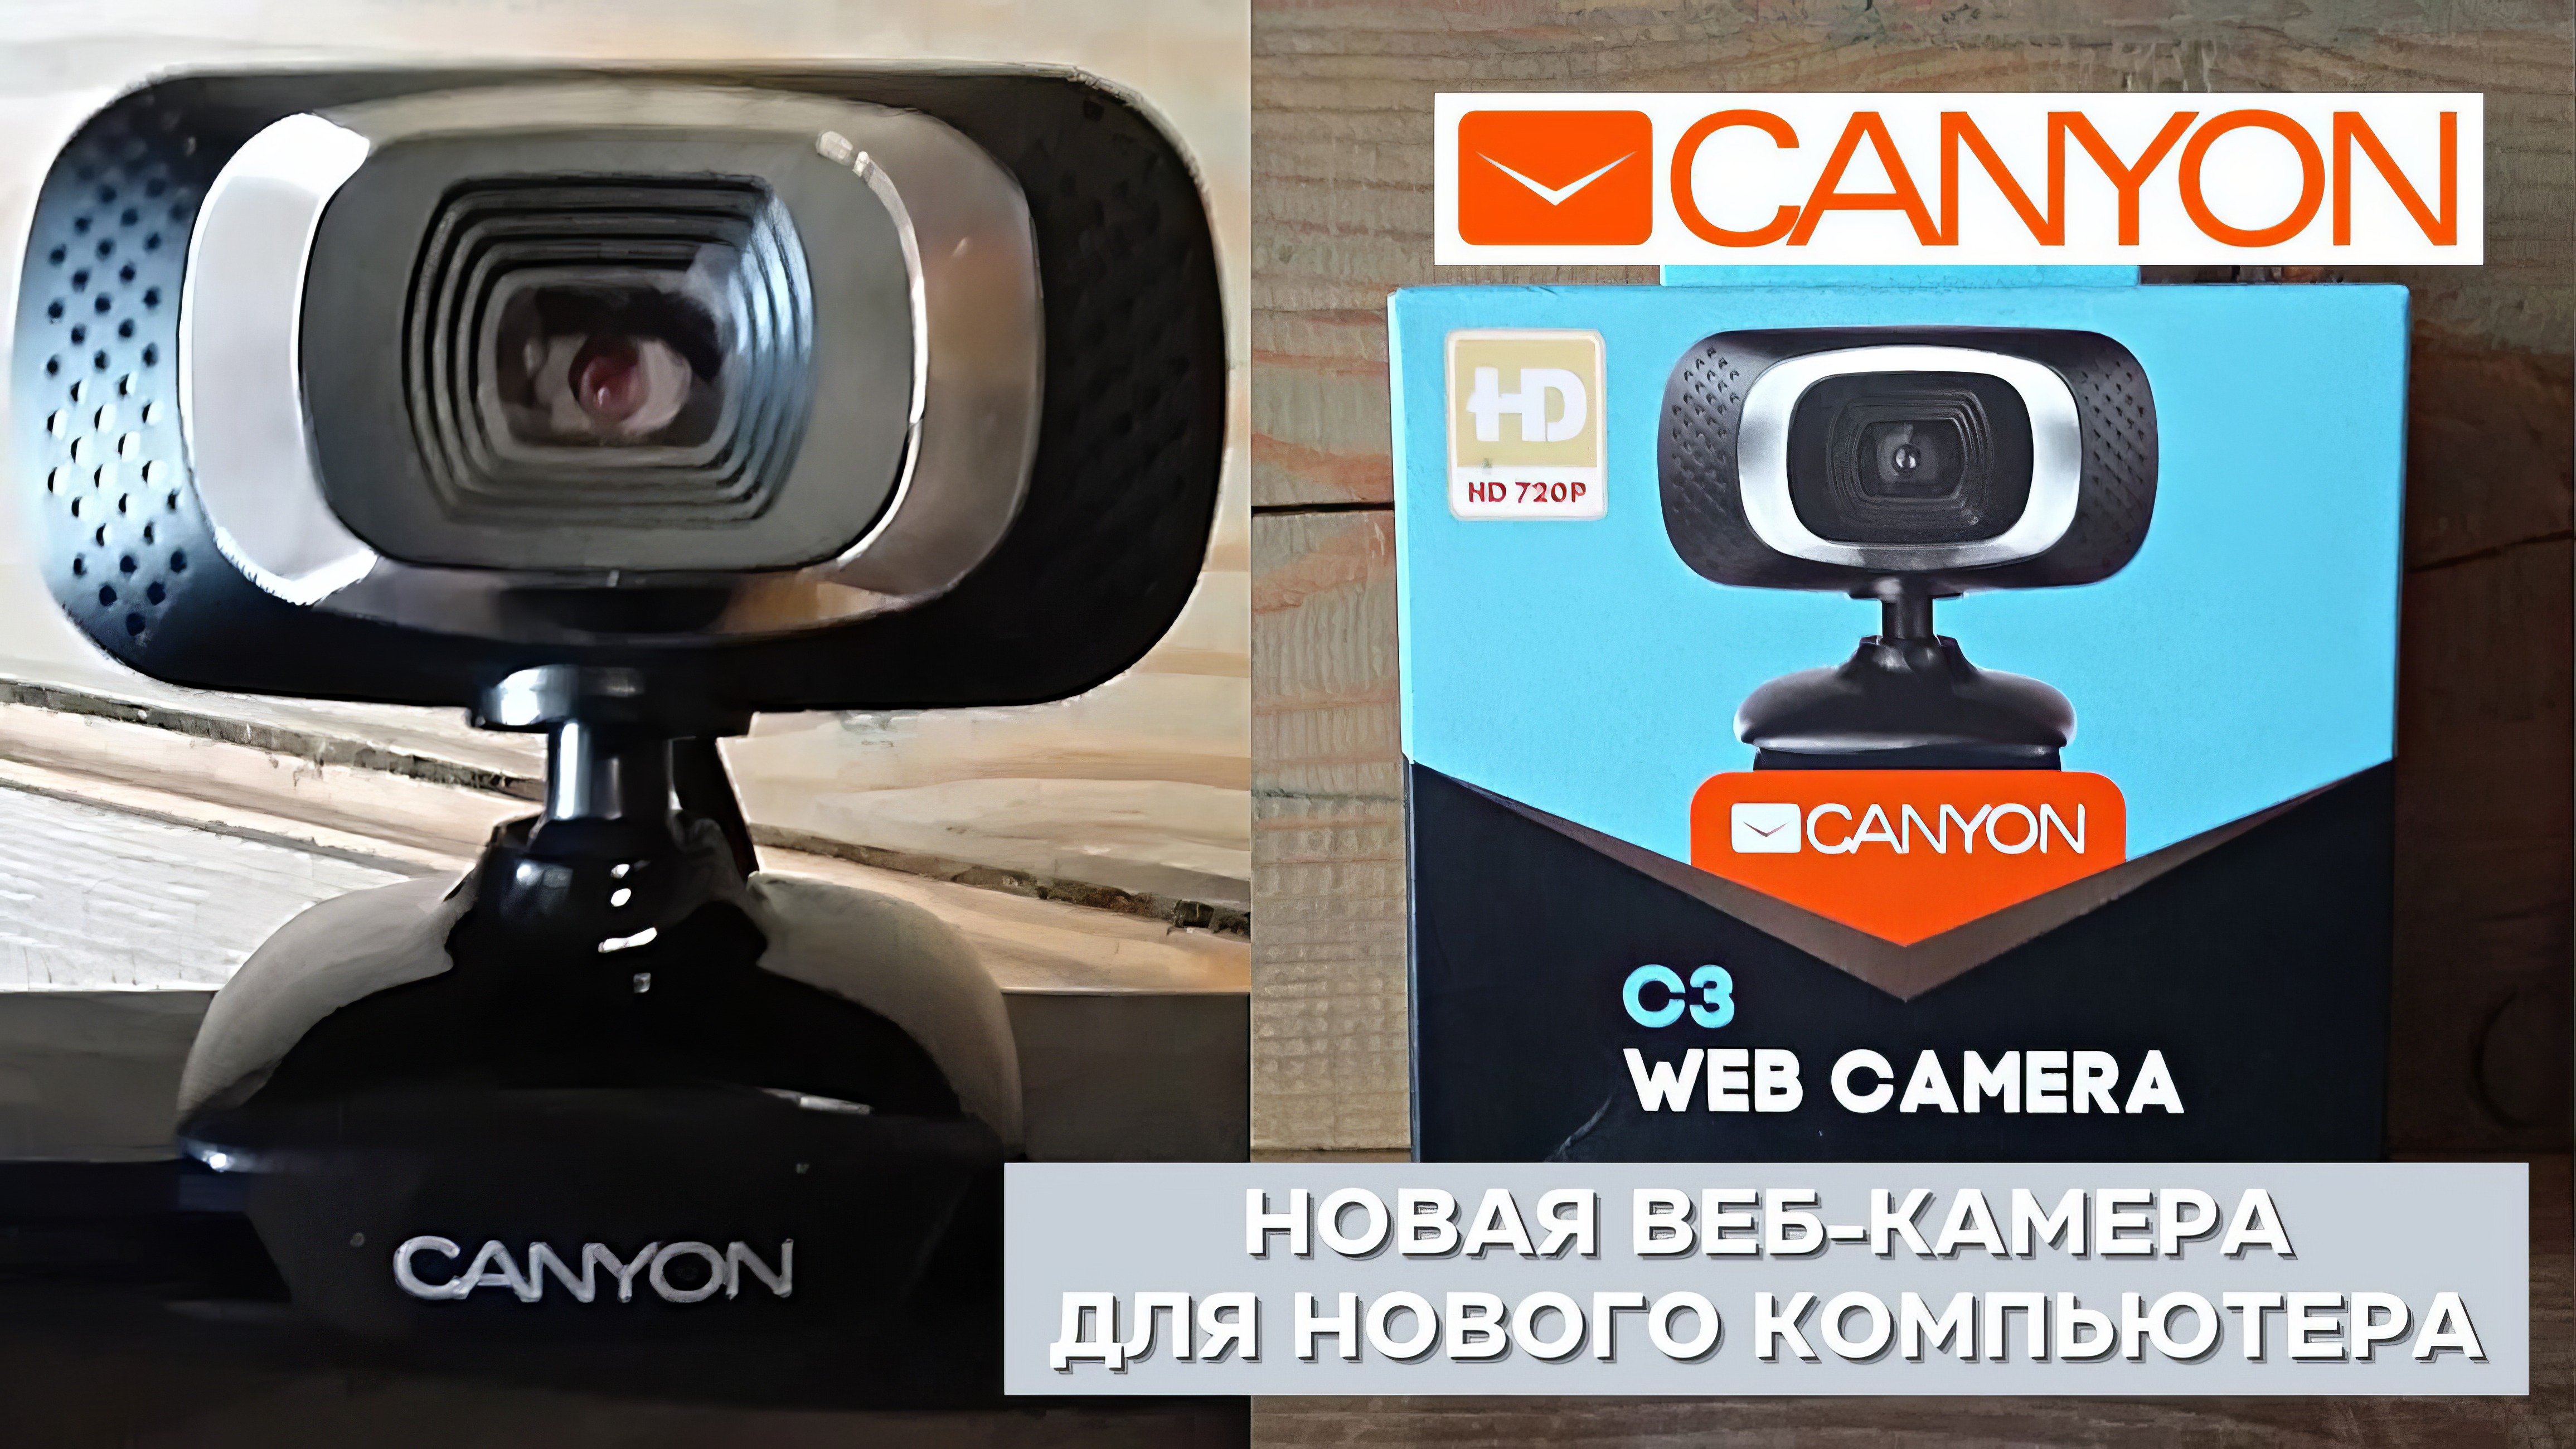 Новая веб-камера Canyon для моего компьютера | Подробности к использованию